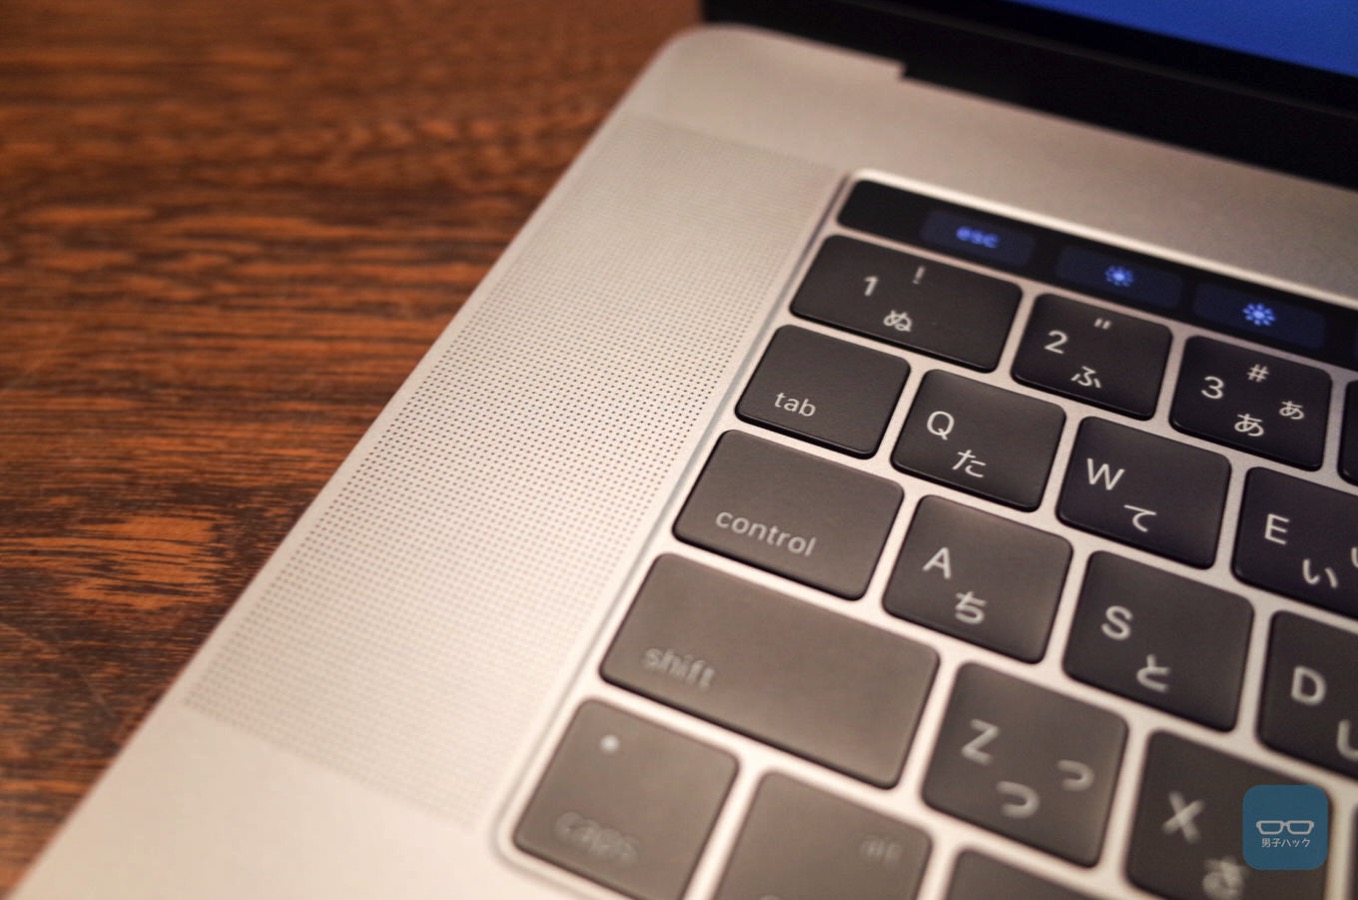 レビュー】MacBook Pro 15(Late 2016)、Touch Barは思ったよりイケてる 